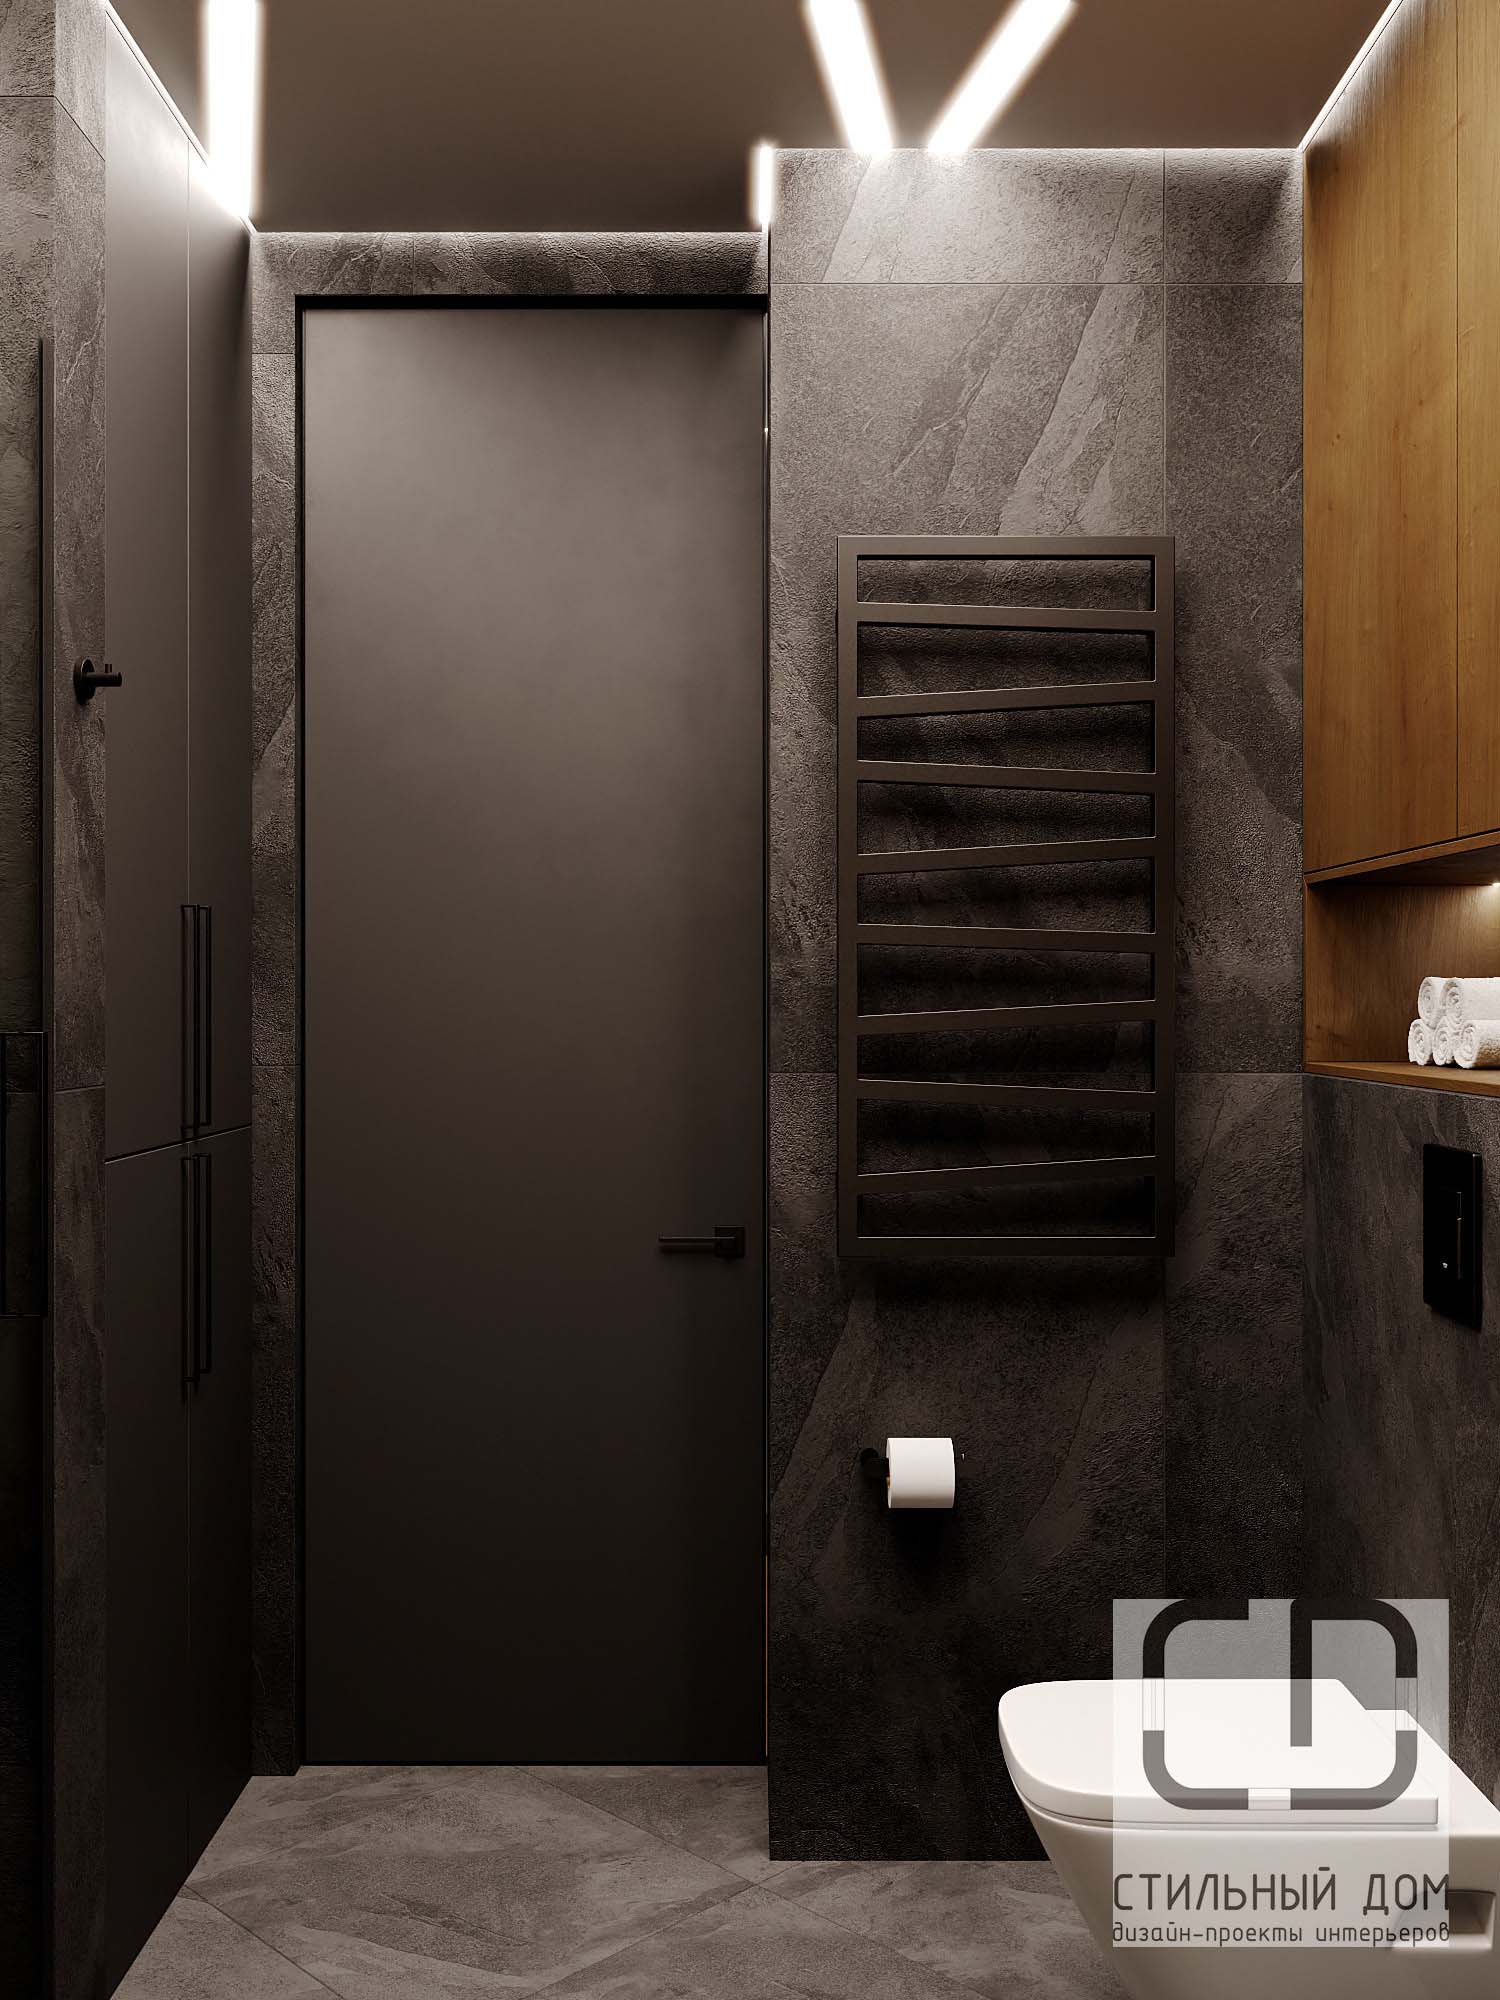 Двери для туалета и ванной – выбор, отзывы, характеристики